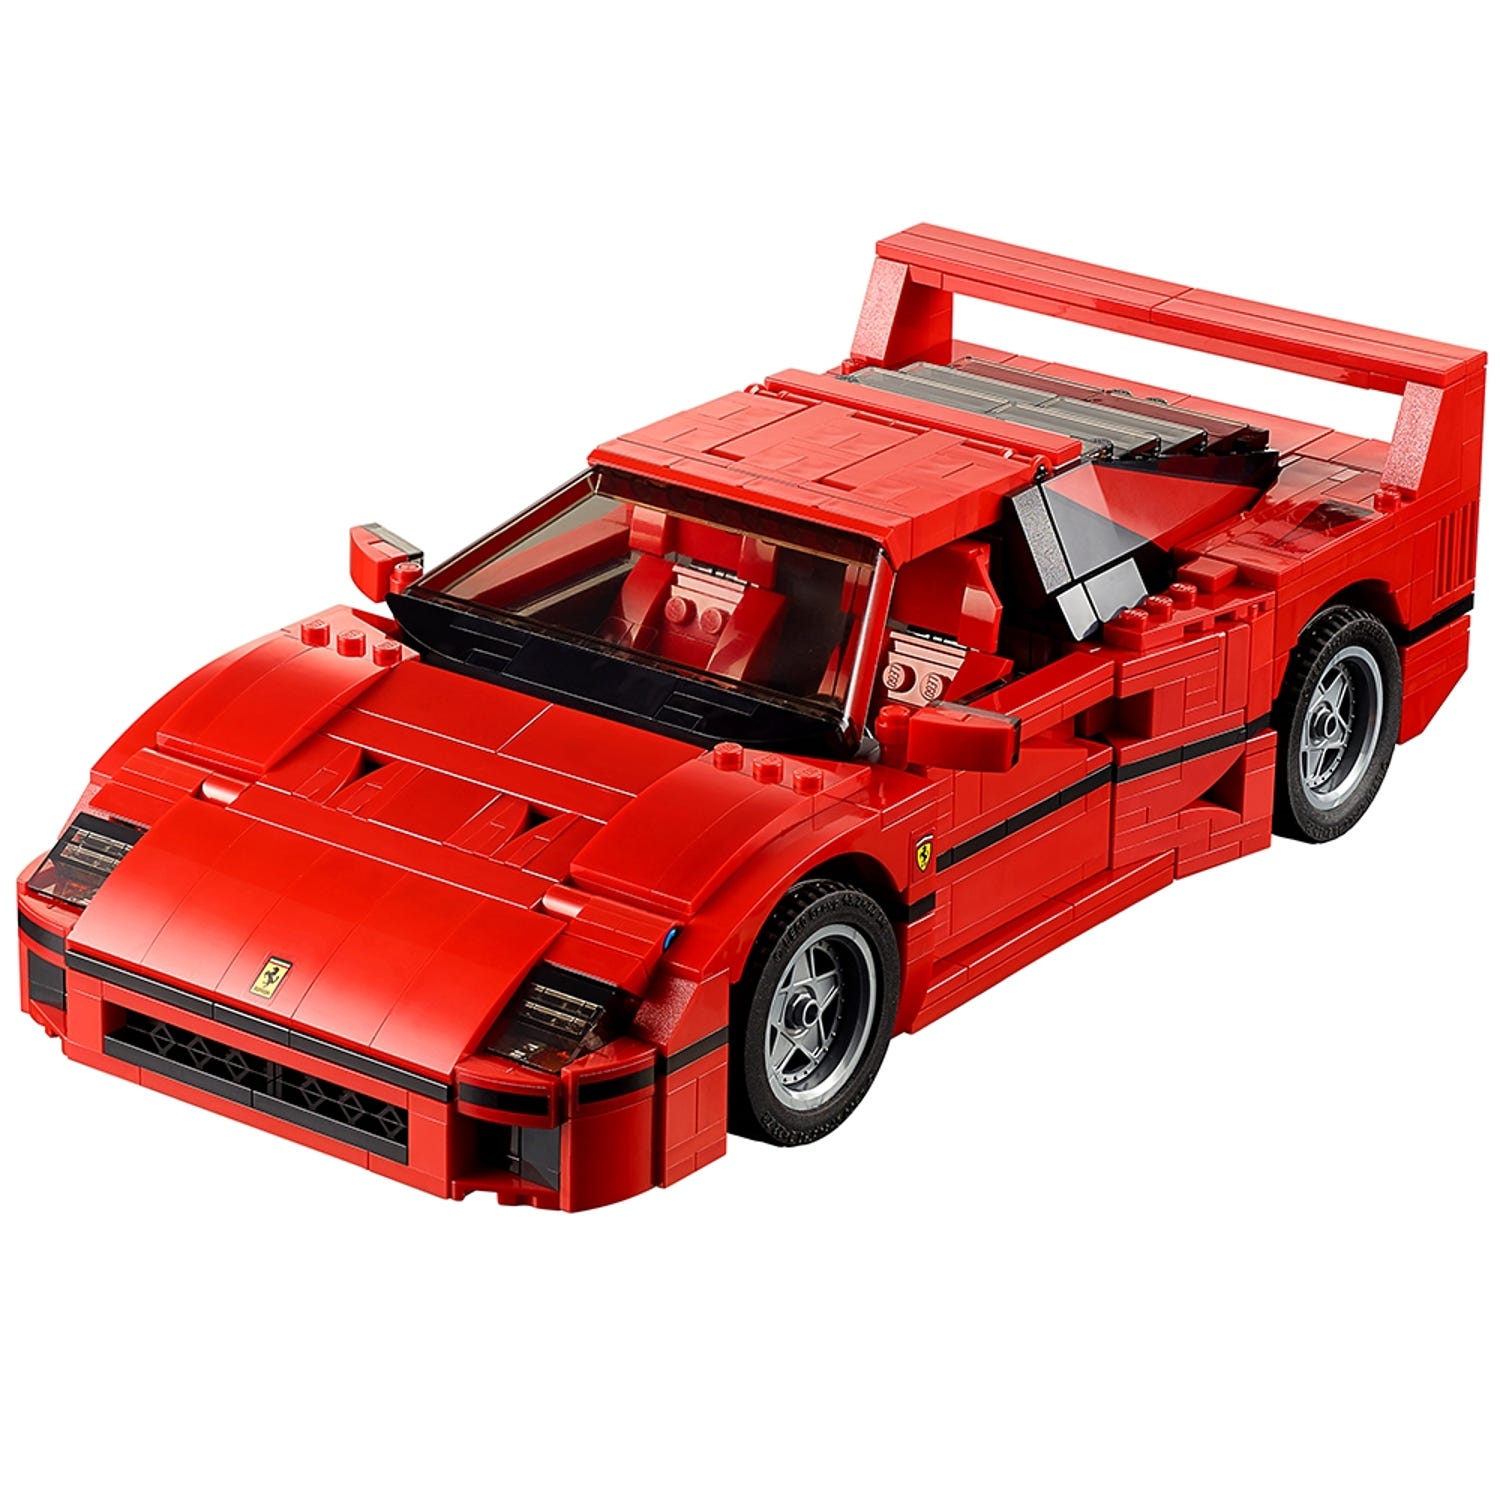 Lego's New Ferrari F40 Kit Is the Ferrari F40 of Lego Kits